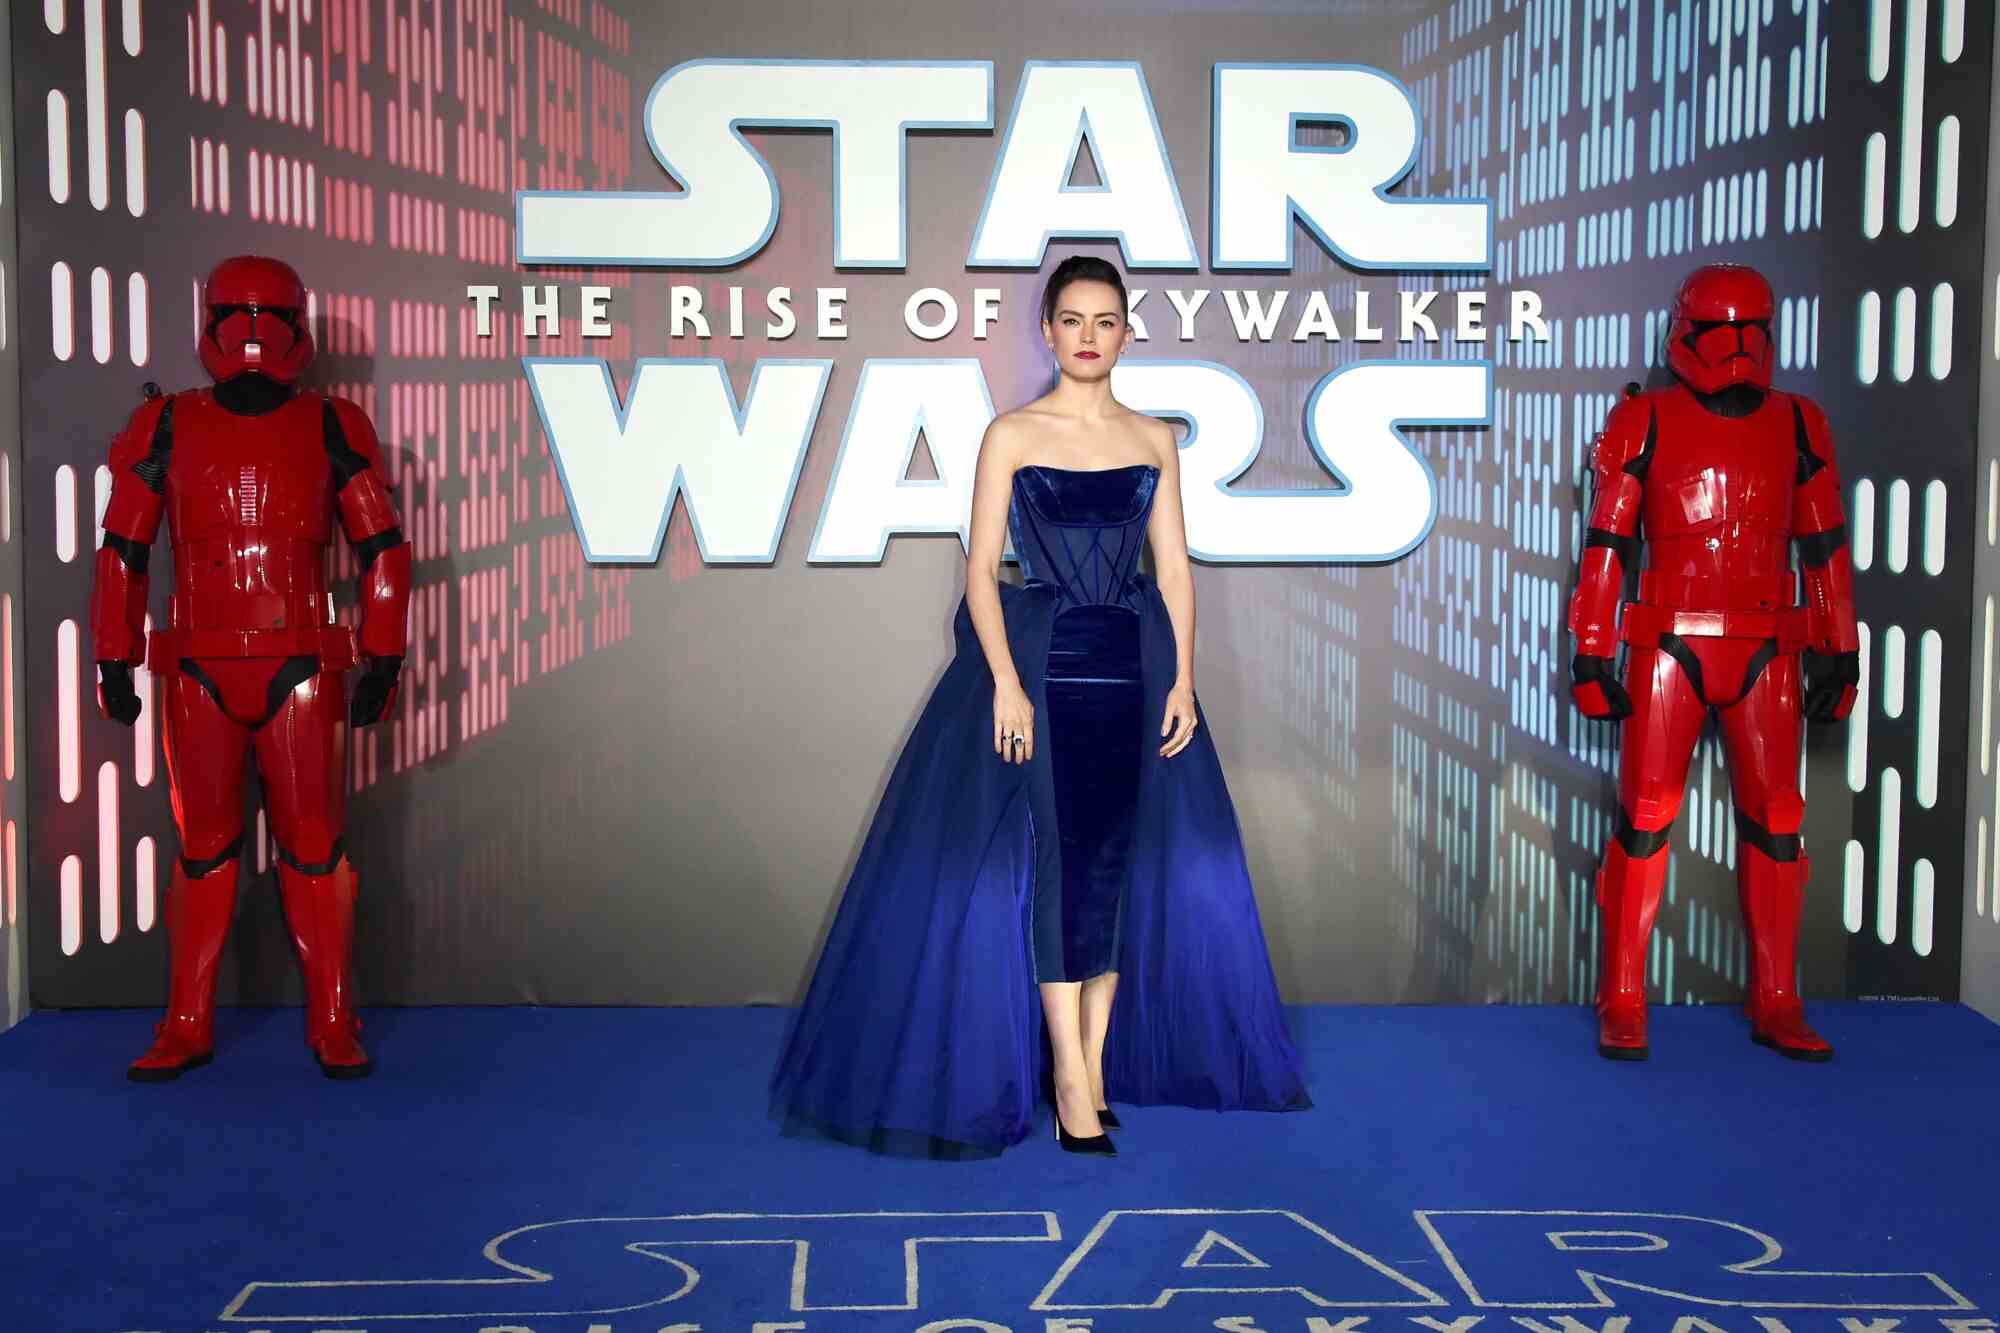 Eine dunkelhaarige Frau in einem blauen Miederkleid vor einem Star Wars-Schild.